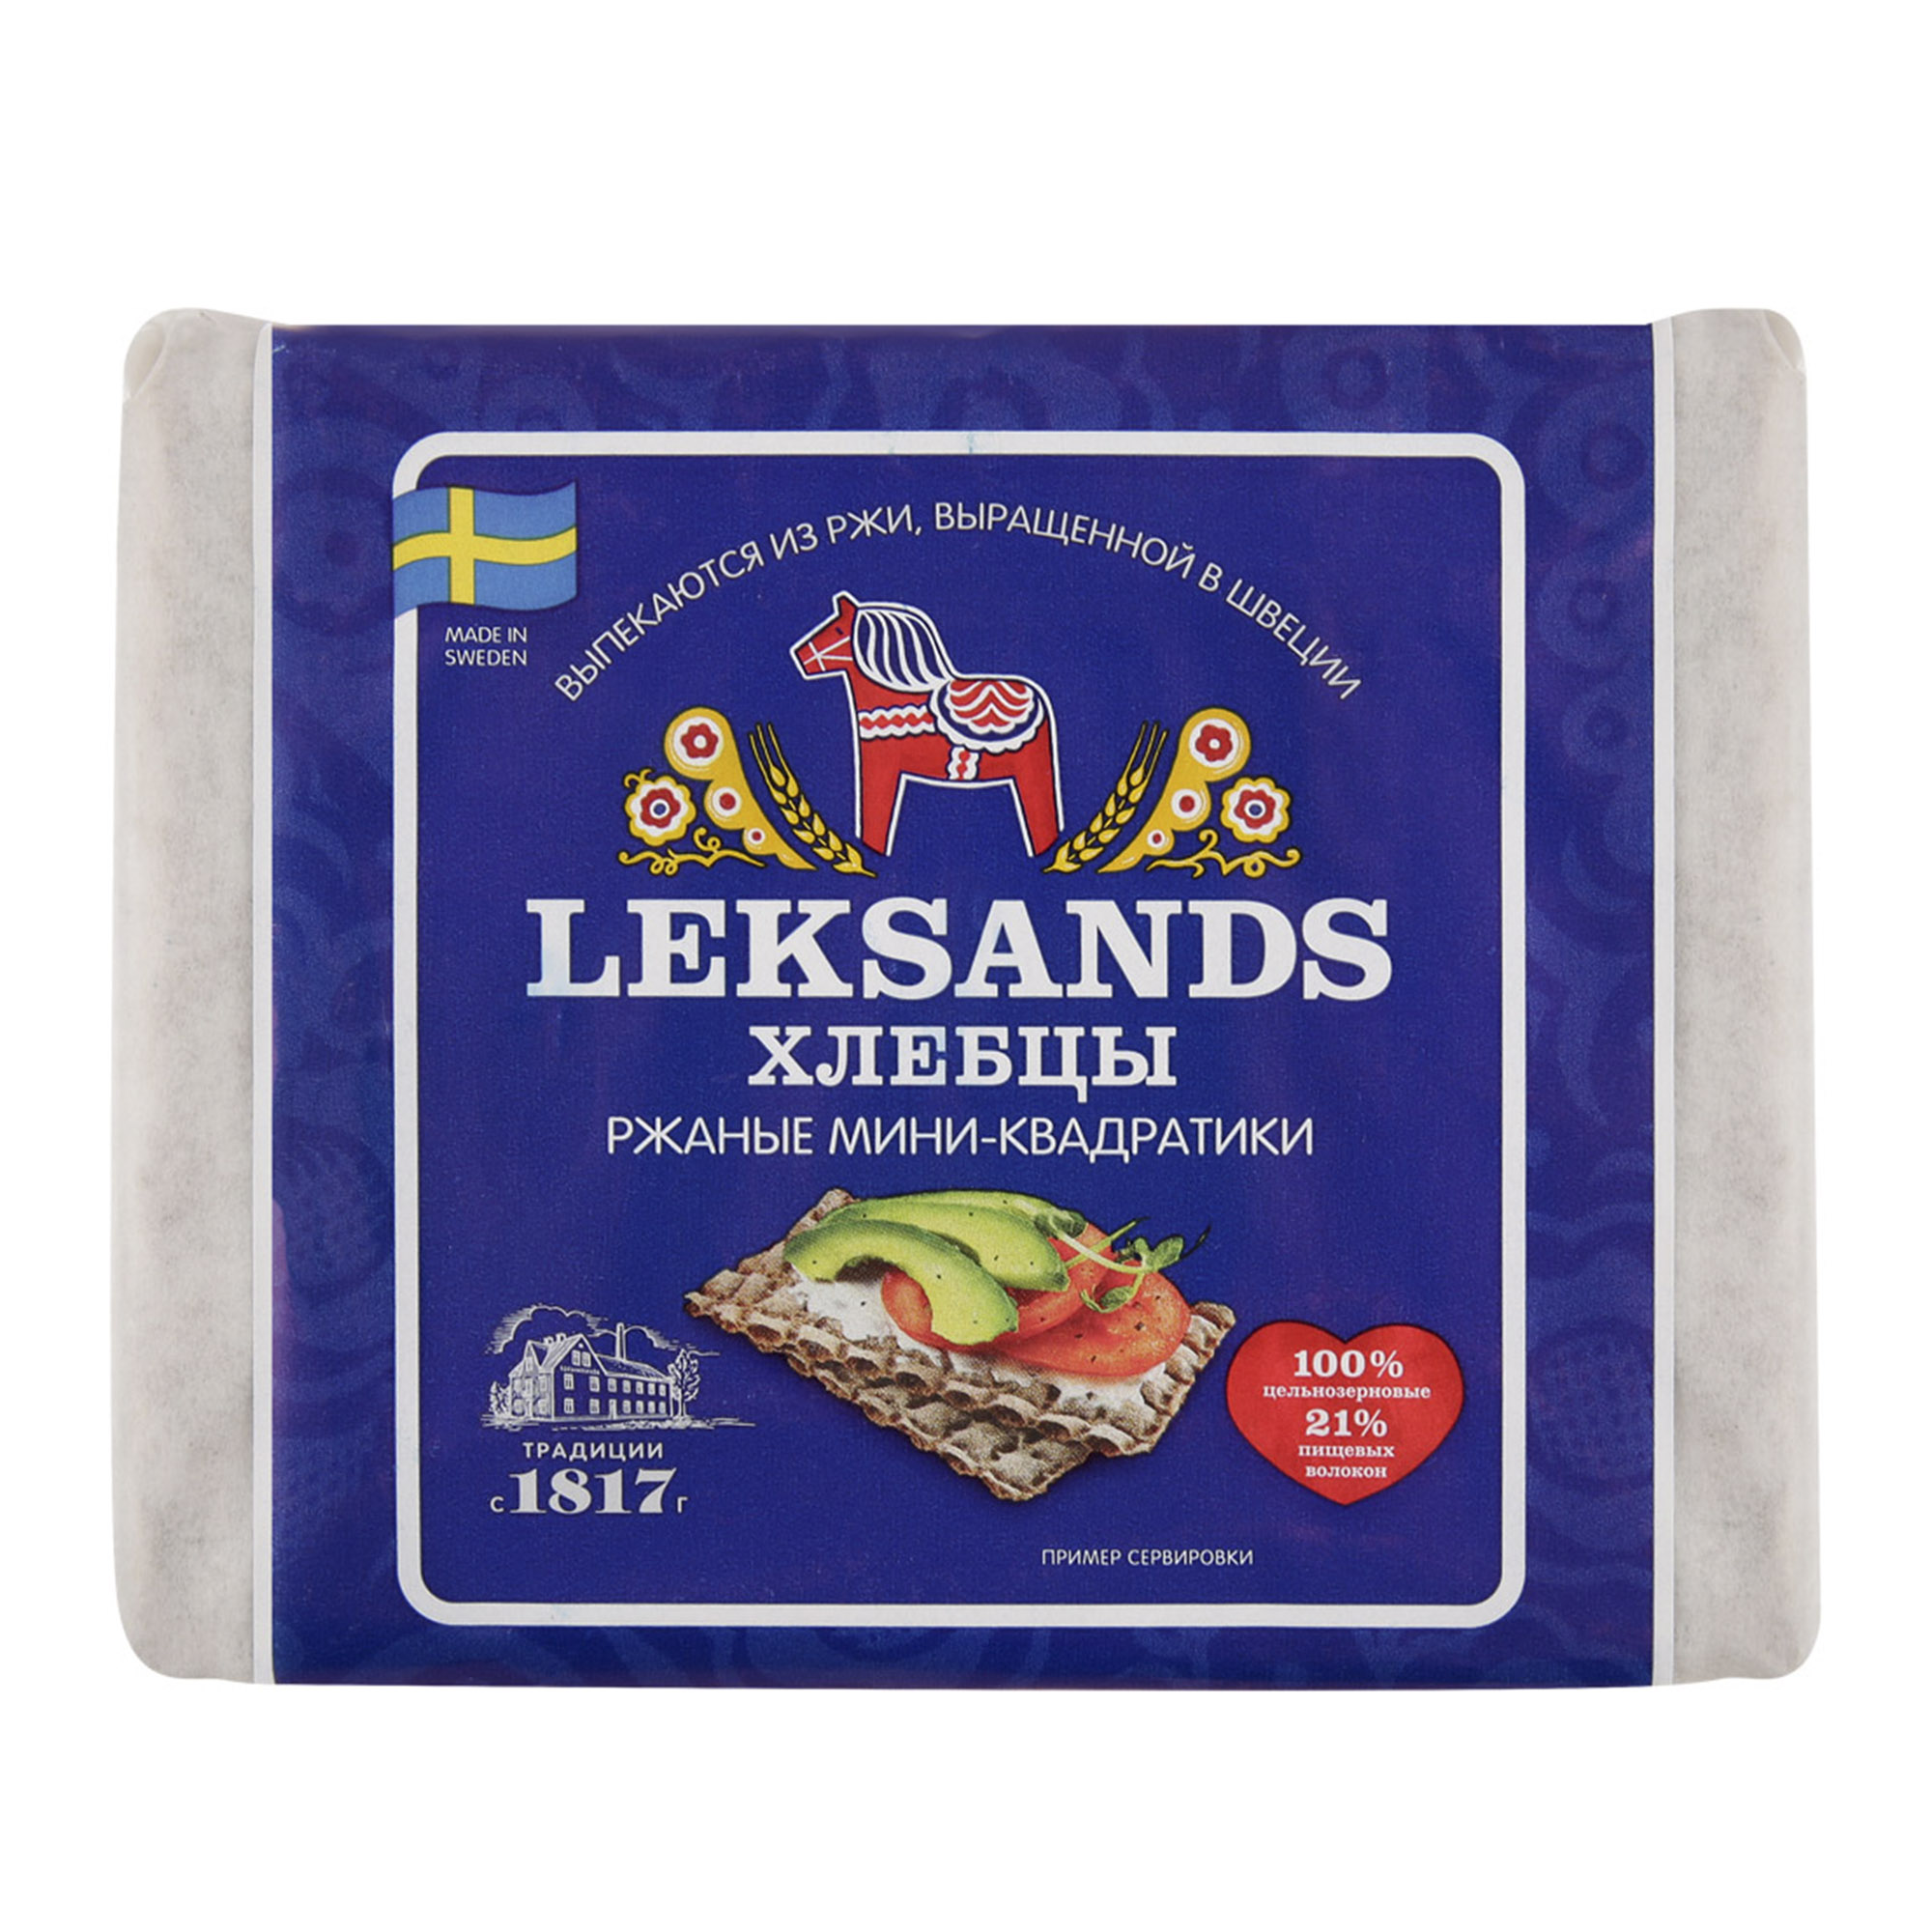 Хлебцы Leksands Ржаные мини-квадратики 200 г